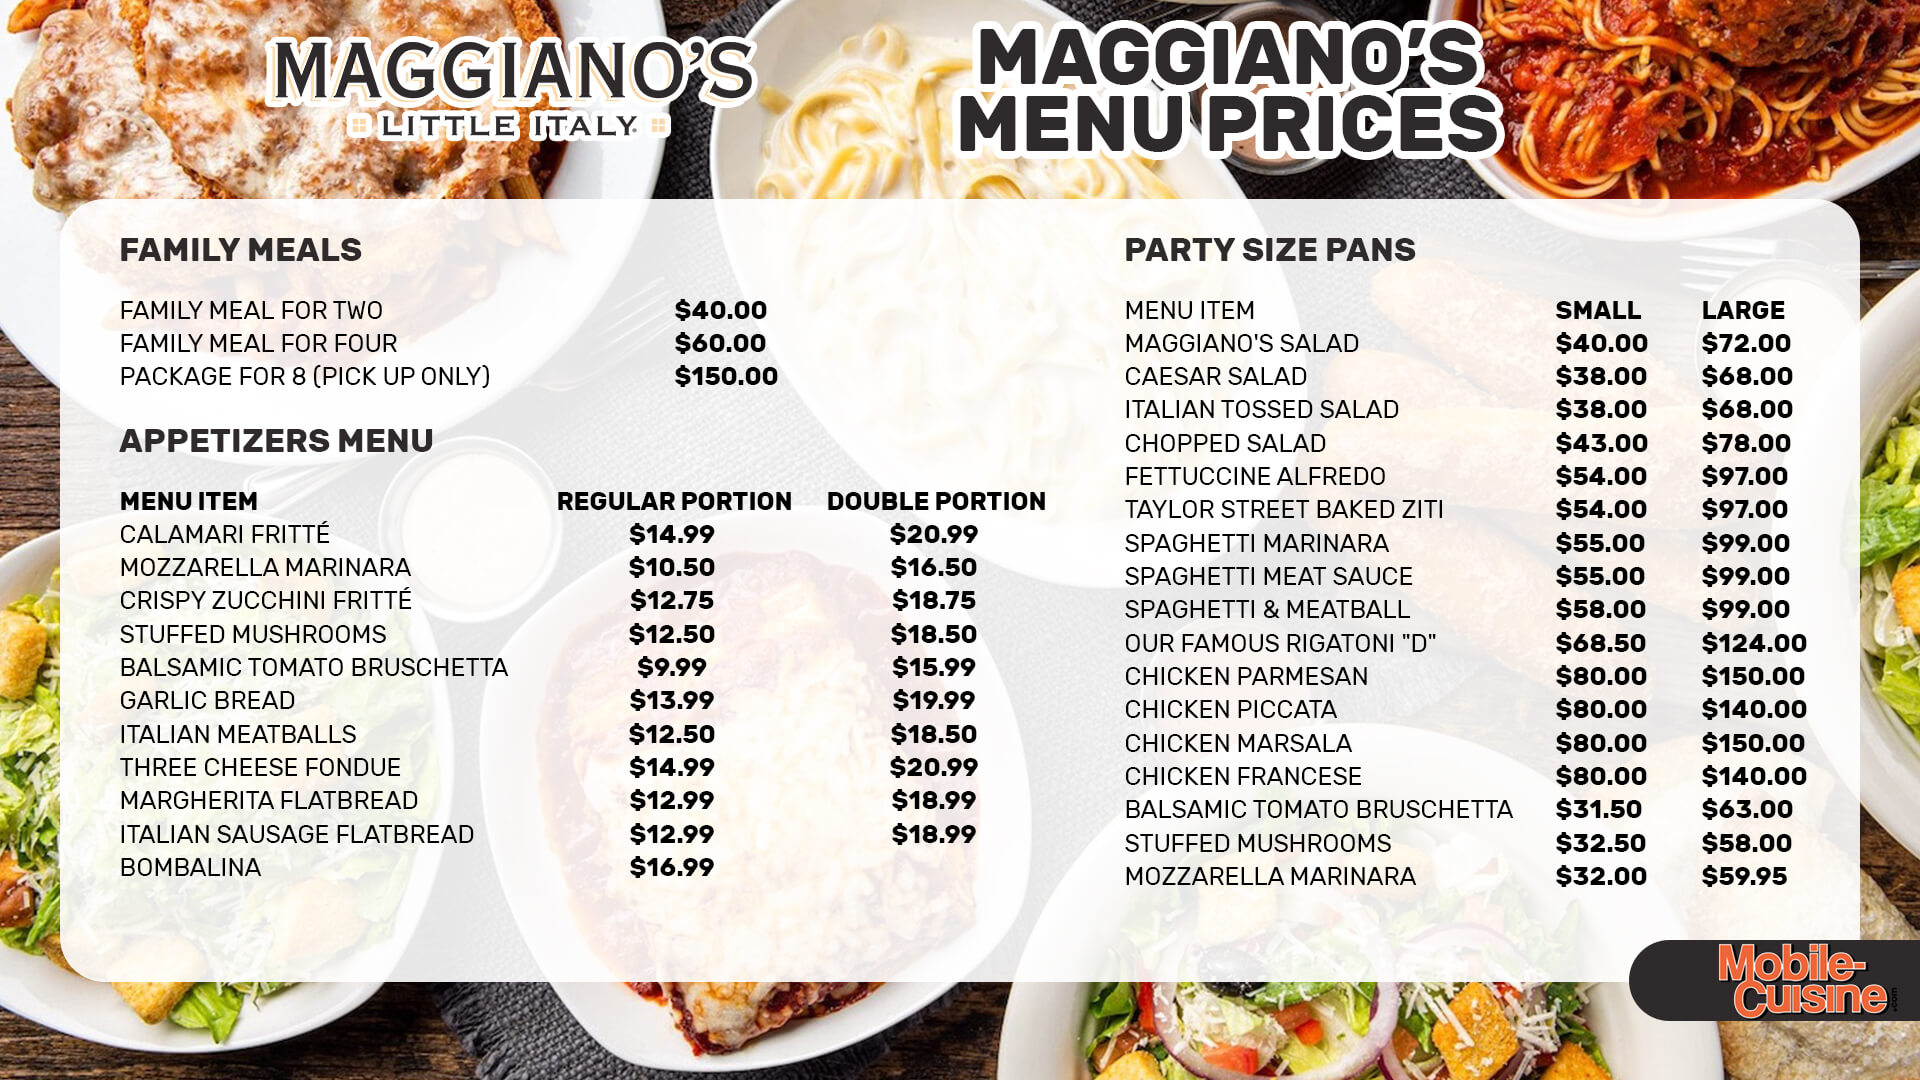 Maggiano’s menu prices